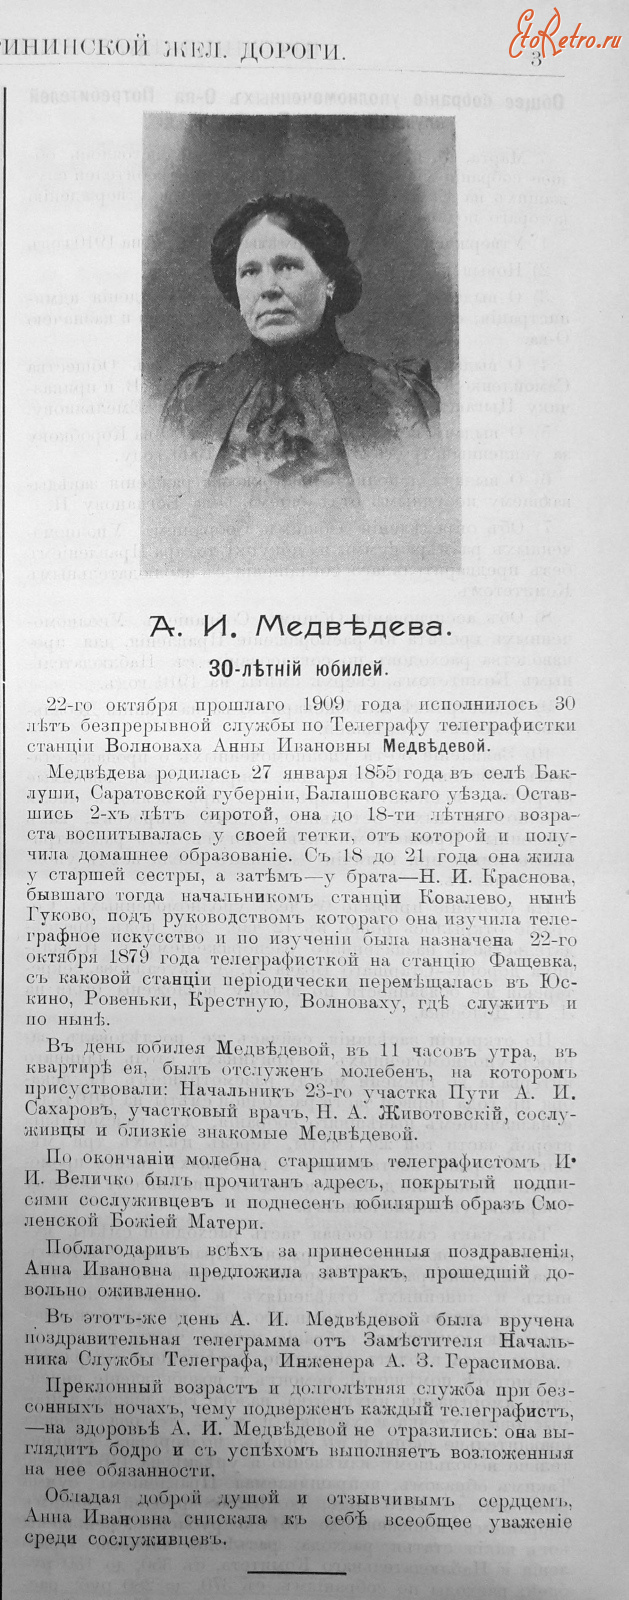 Волноваха - А.И. Медведева, телеграфистка станции Волноваха